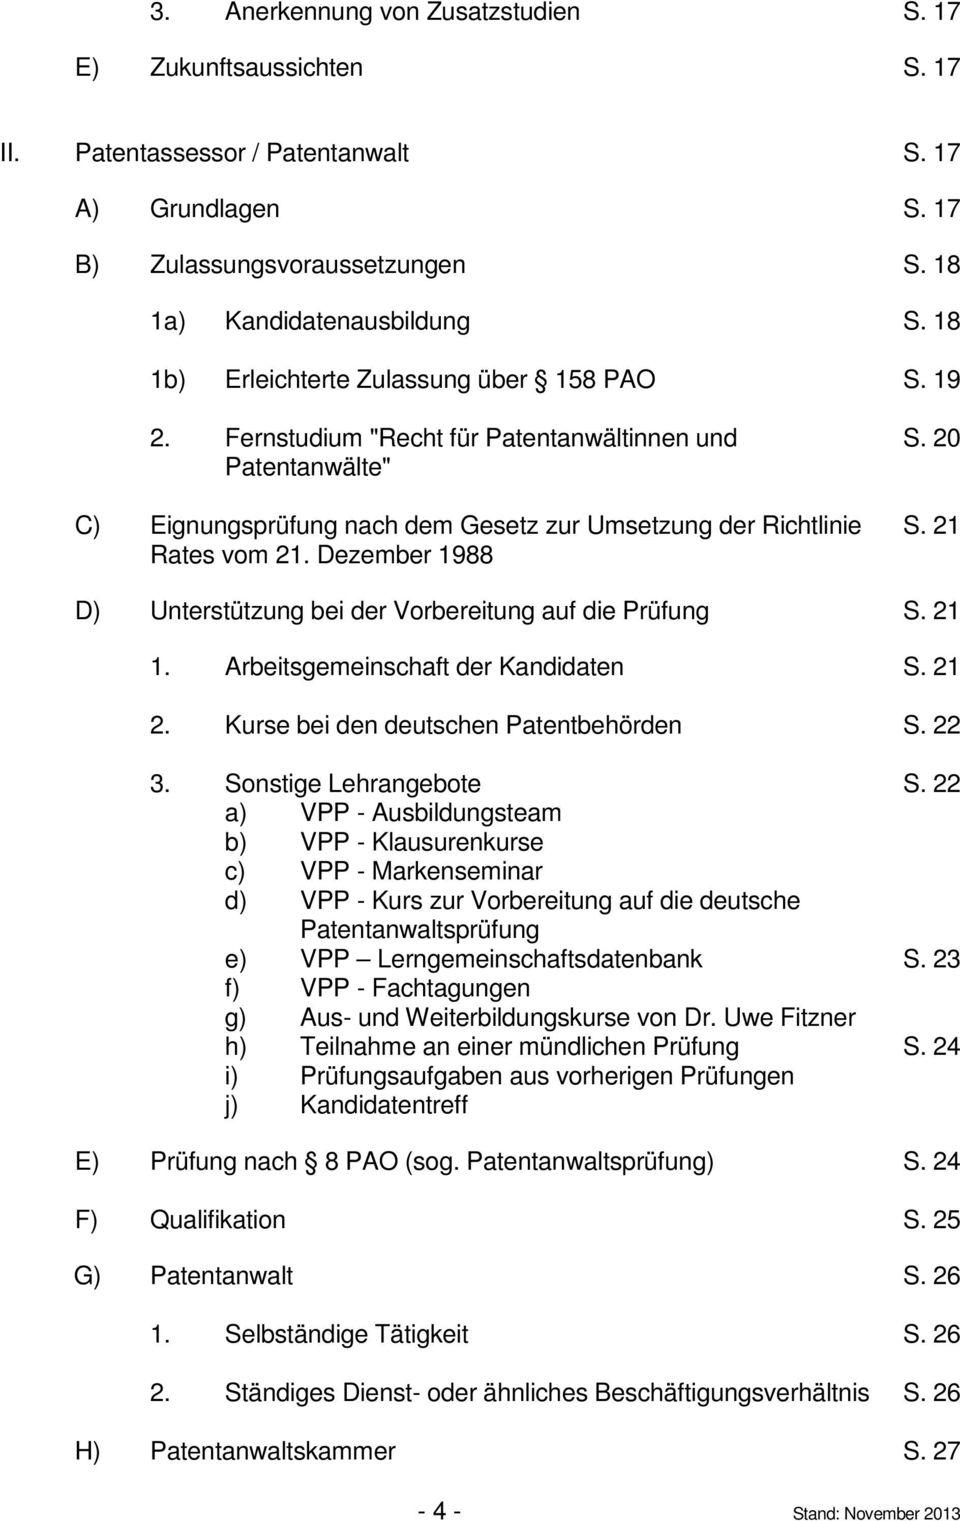 21 Rates vom 21. Dezember 1988 D) Unterstützung bei der Vorbereitung auf die Prüfung S. 21 1. Arbeitsgemeinschaft der Kandidaten S. 21 2. Kurse bei den deutschen Patentbehörden S. 22 3.